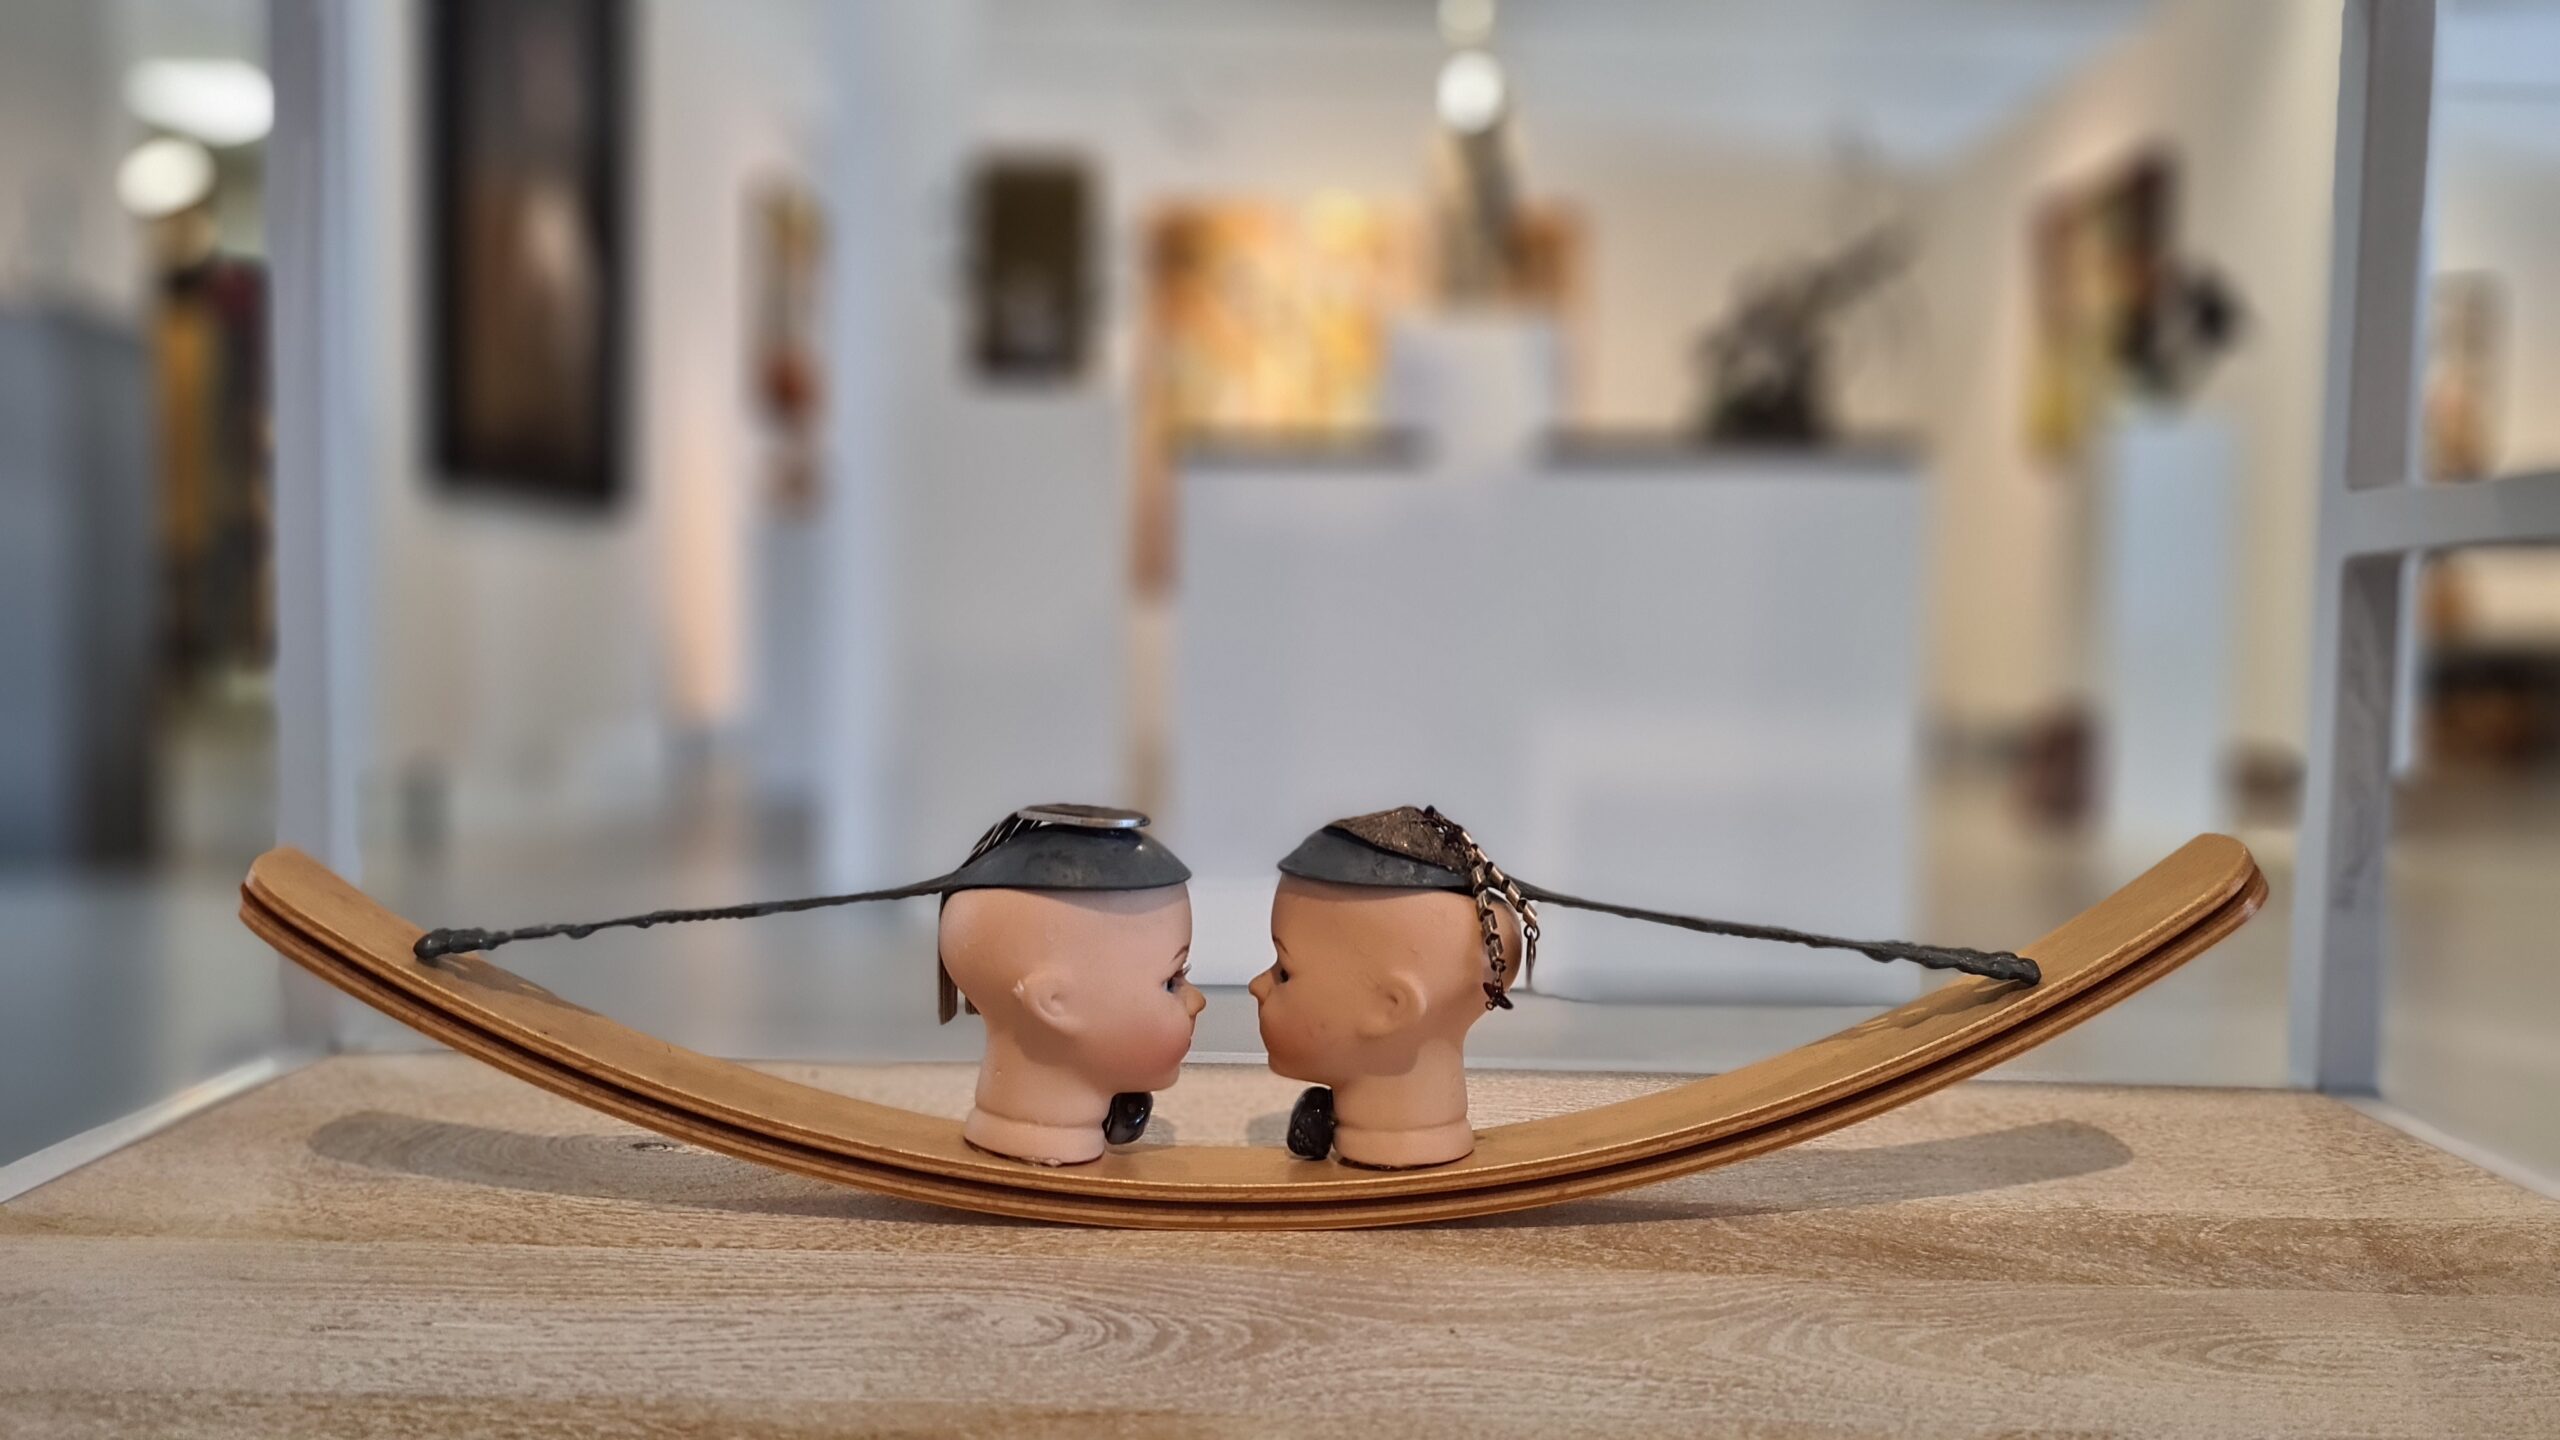 Kunst: Tin twin friends van kunstenaar Frida Badoux